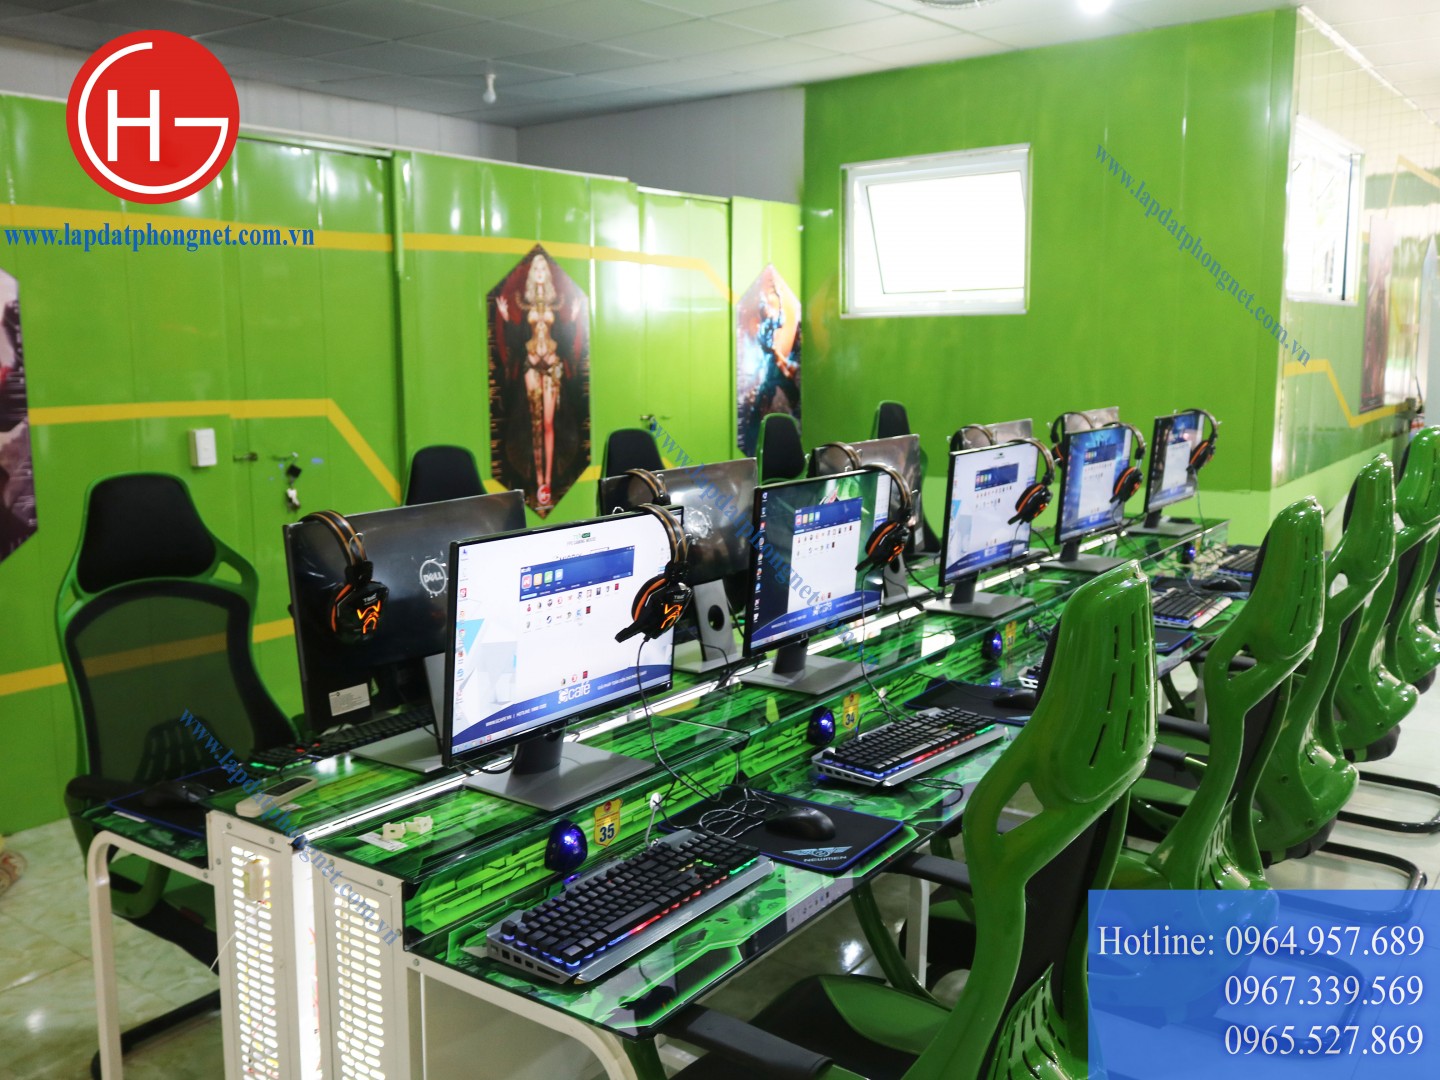 Lắp đặt phòng game net cho anh Lai tại Điện Biên